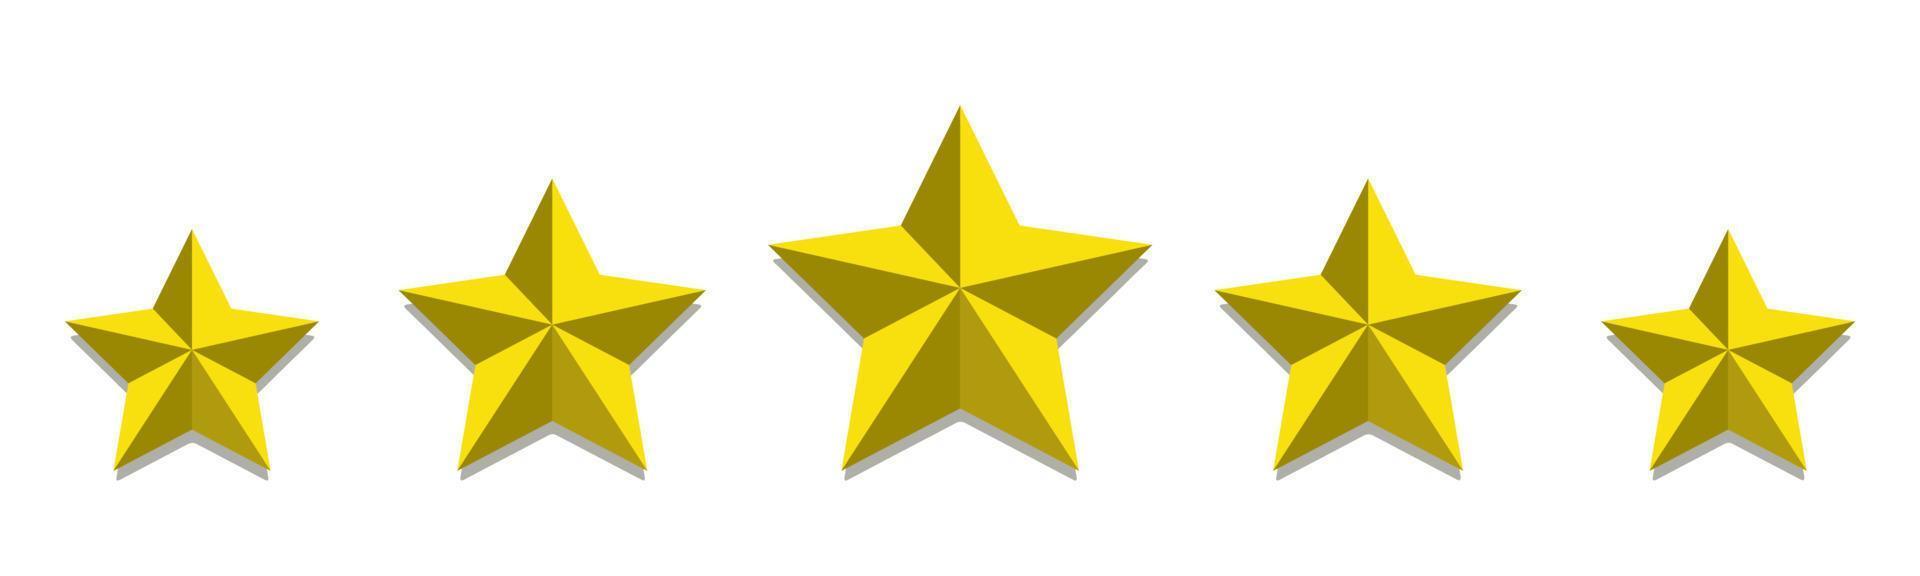 Bewertung mit fünf goldenen Sternen vektor